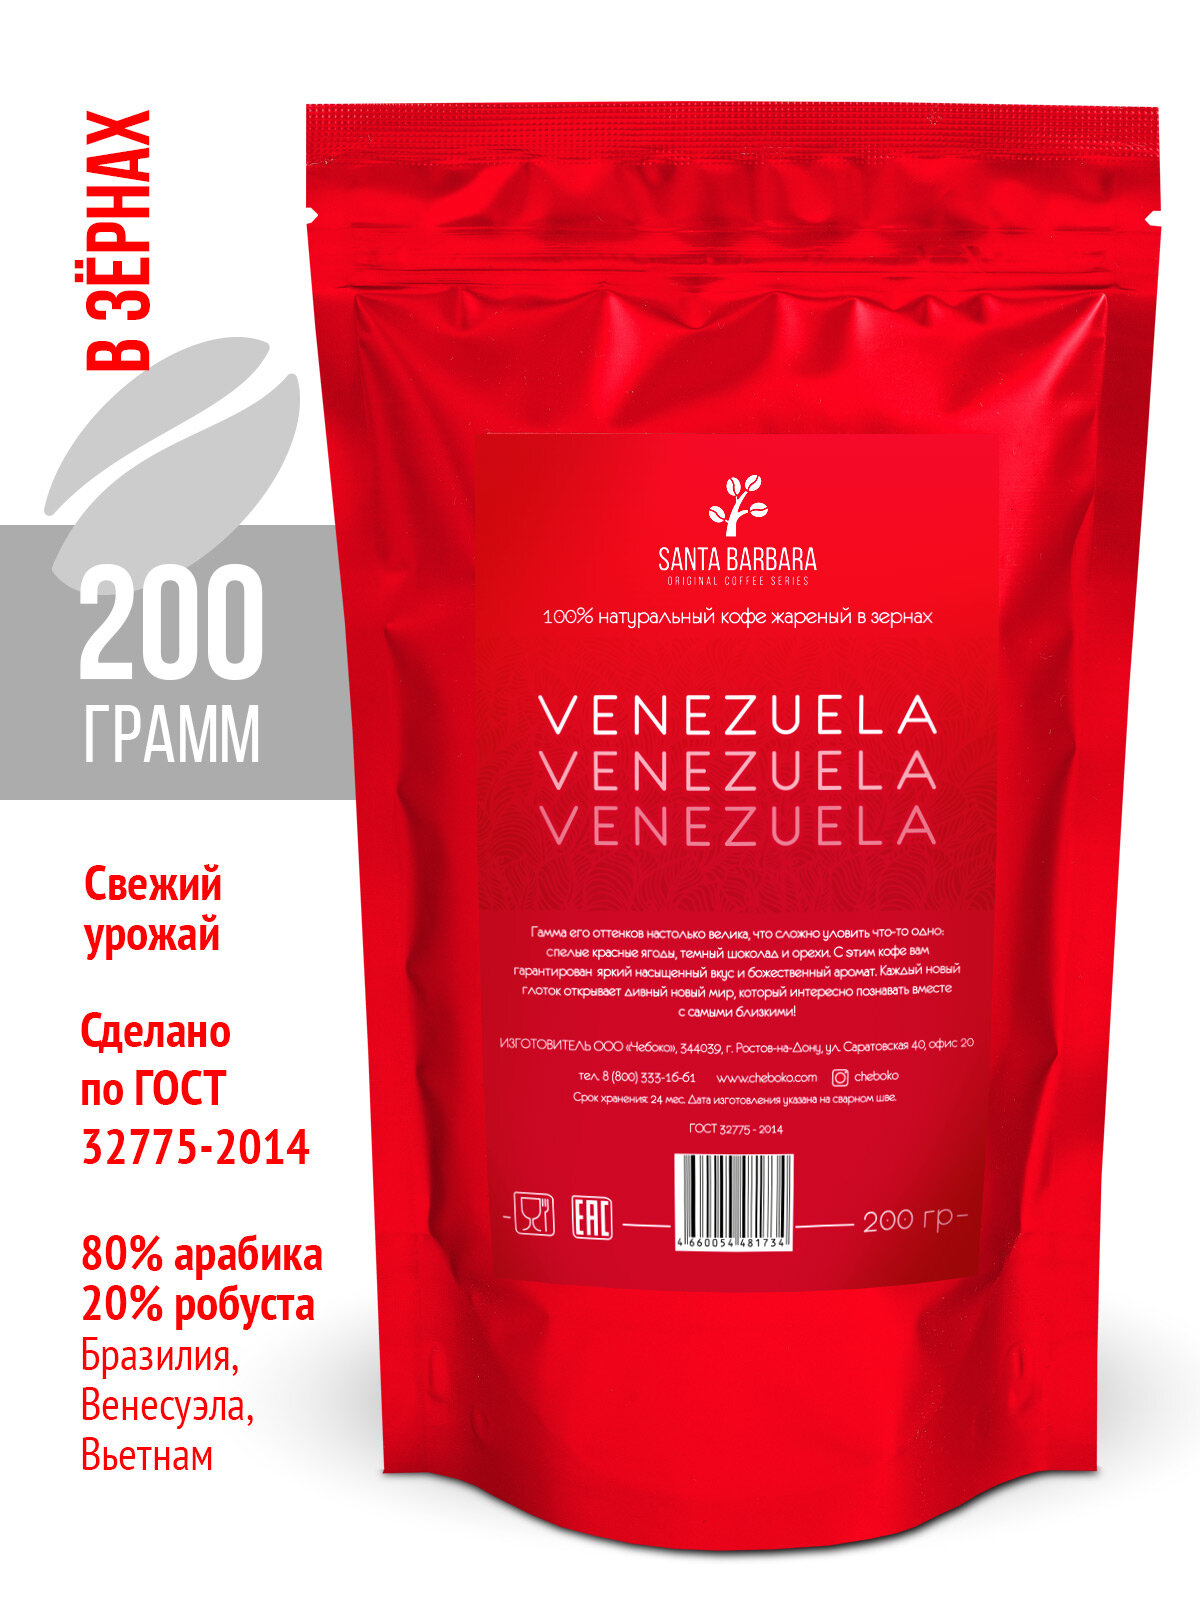 Кофе в зернах «Santa Barbara Venezuela», 200 грамм, Арабика 80%, Робуста 20%, Бразилия, Венесуэла, Въетнам